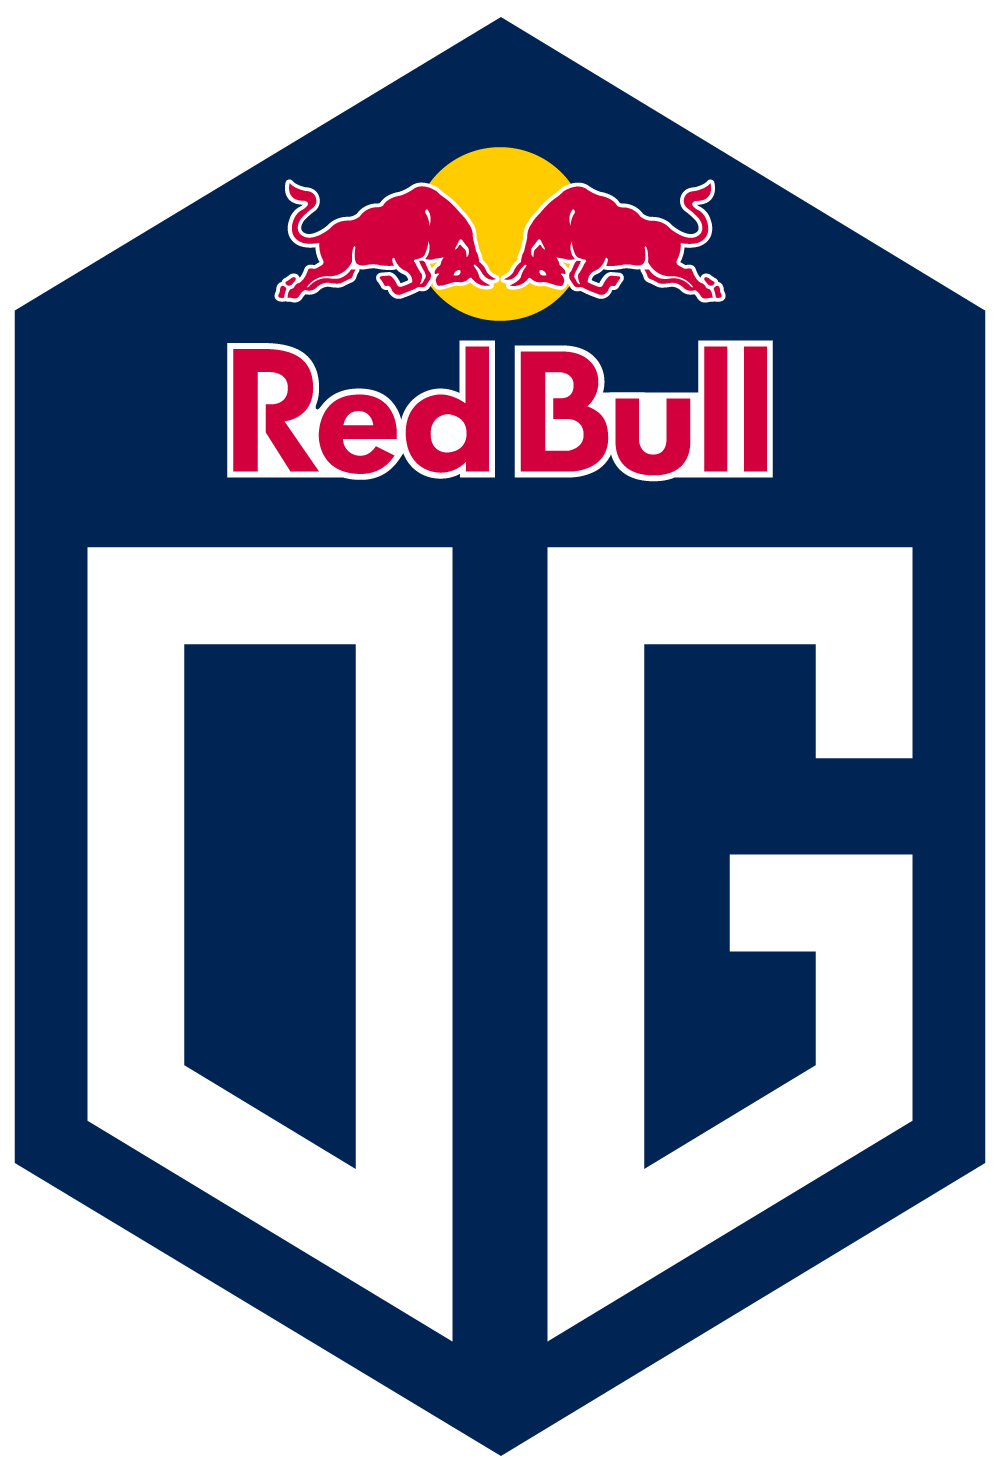 OG's logo